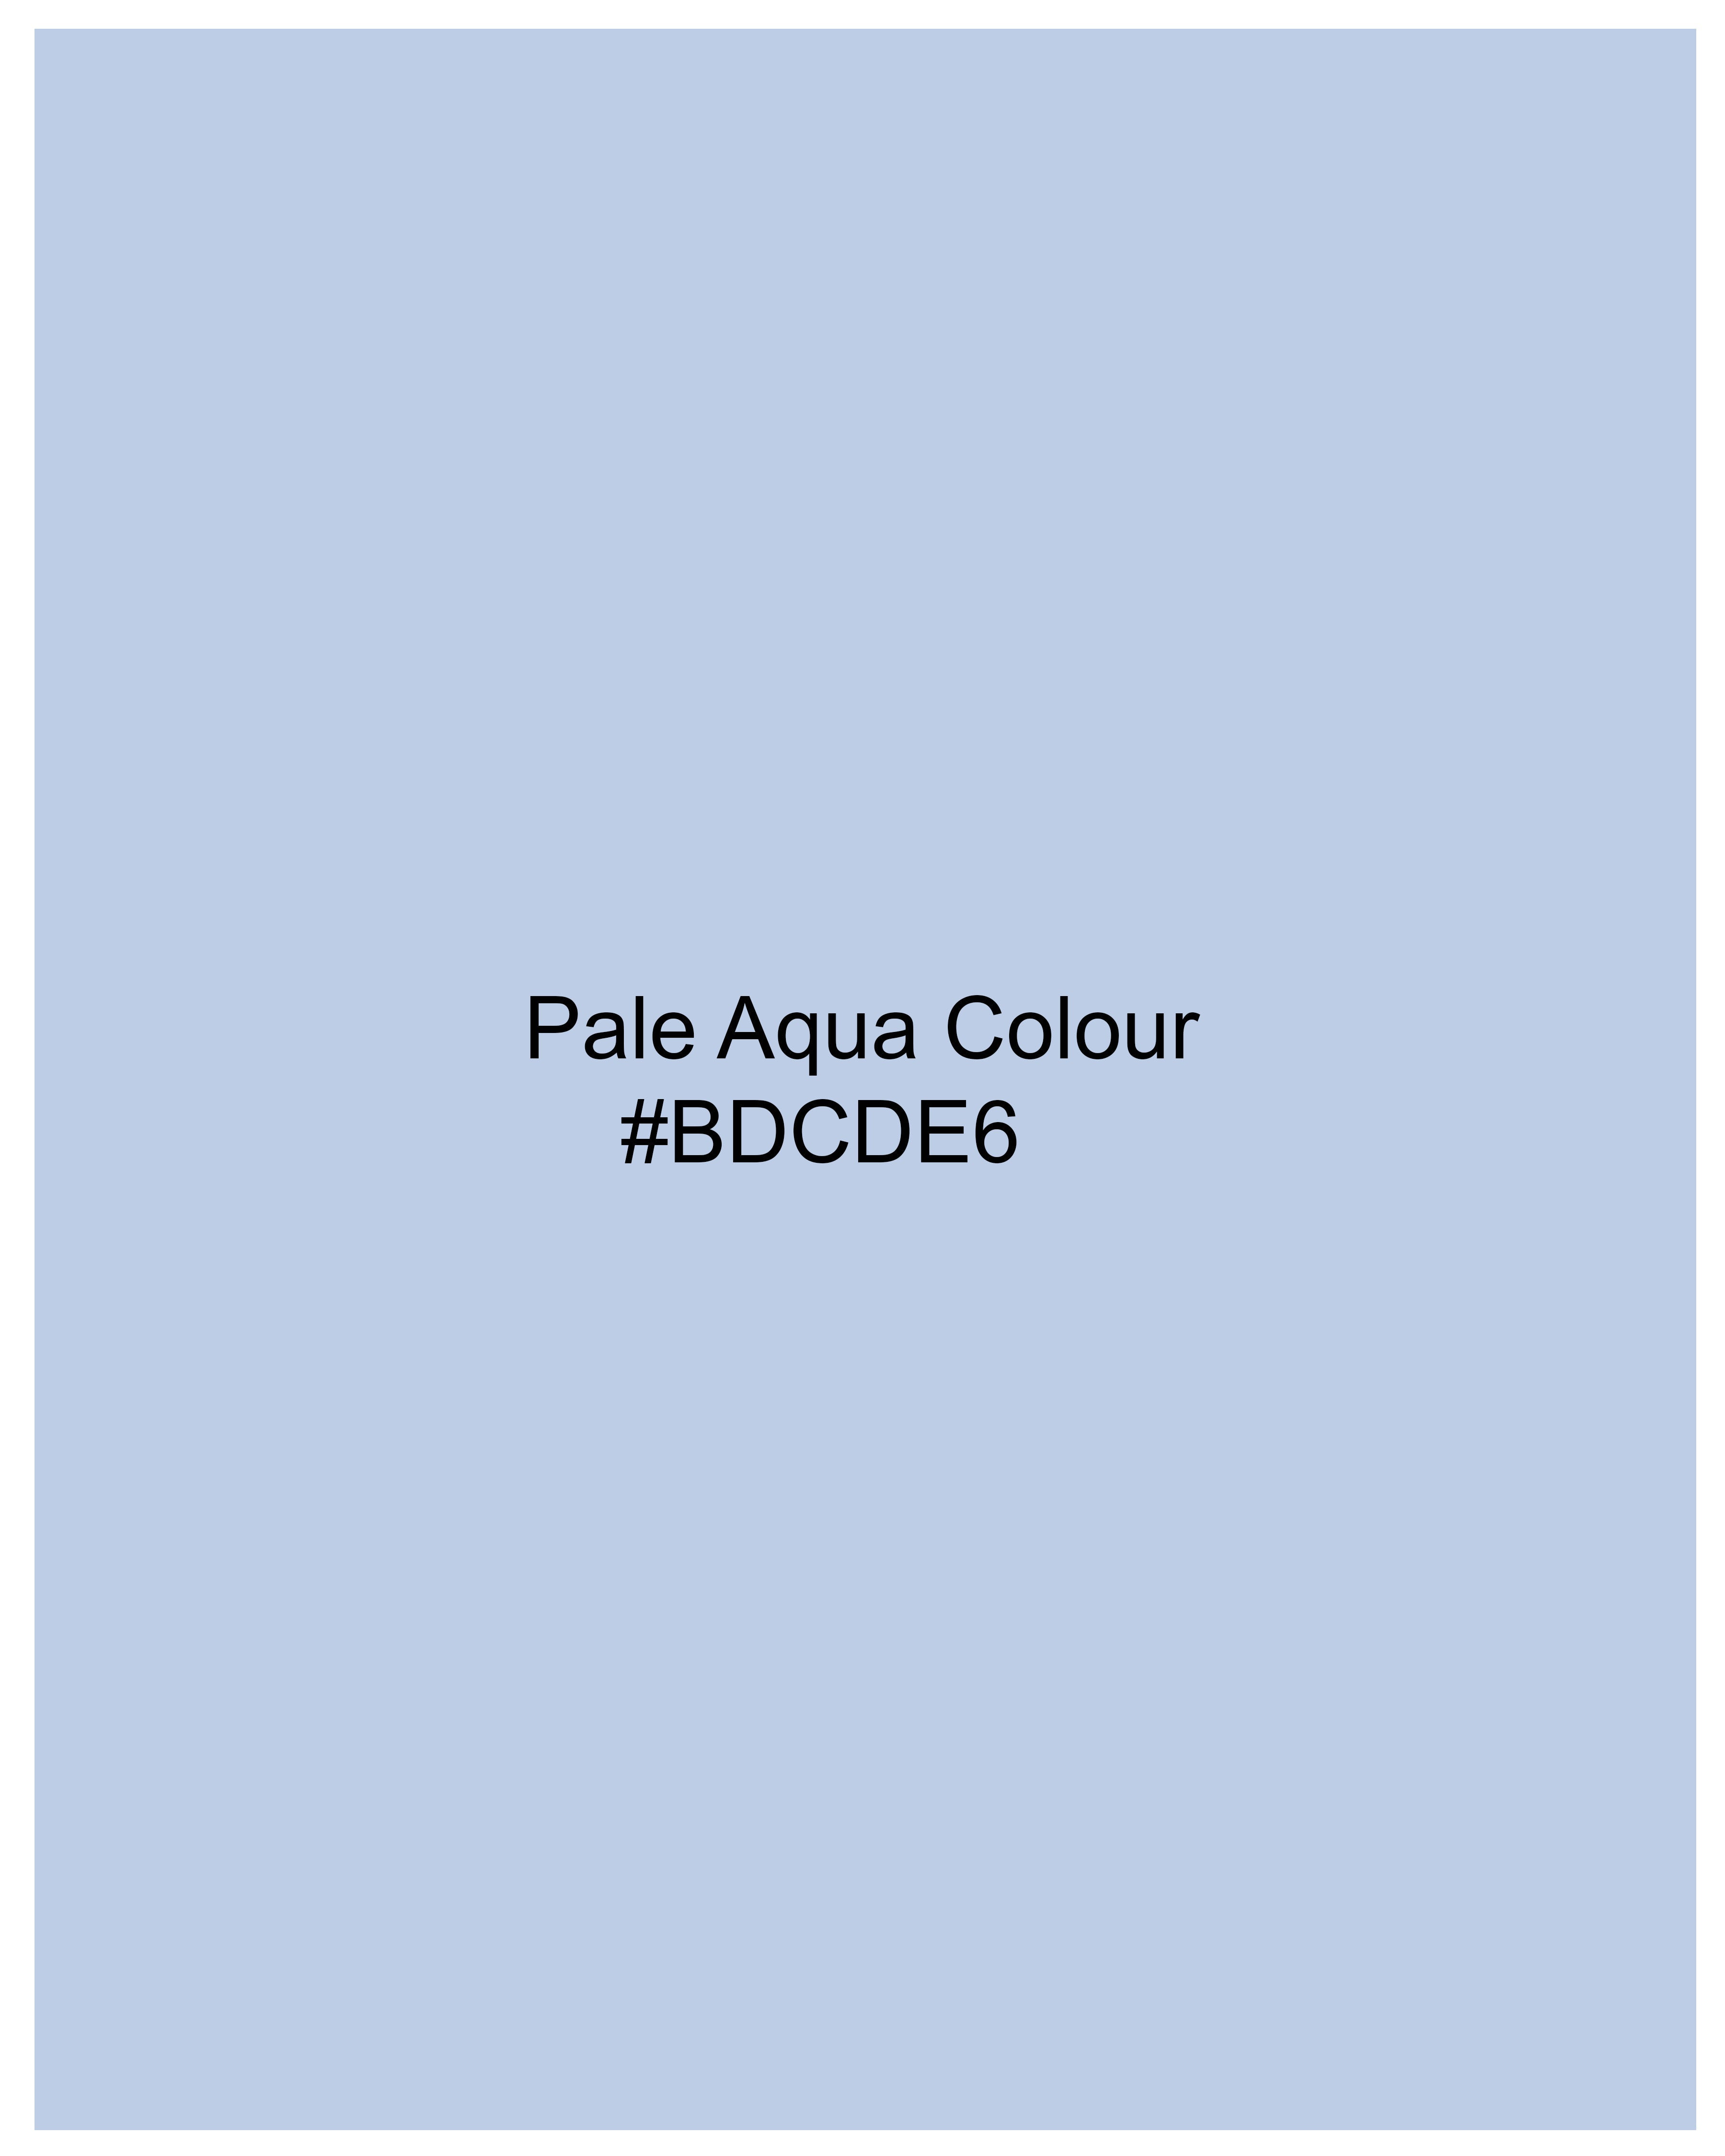 Pale Aqua Blue Luxurious Linen Shirt 9358-M-38, 9358-M-H-38, 9358-M-39, 9358-M-H-39, 9358-M-40, 9358-M-H-40, 9358-M-42, 9358-M-H-42, 9358-M-44, 9358-M-H-44, 9358-M-46, 9358-M-H-46, 9358-M-48, 9358-M-H-48, 9358-M-50, 9358-M-H-50, 9358-M-52, 9358-M-H-52